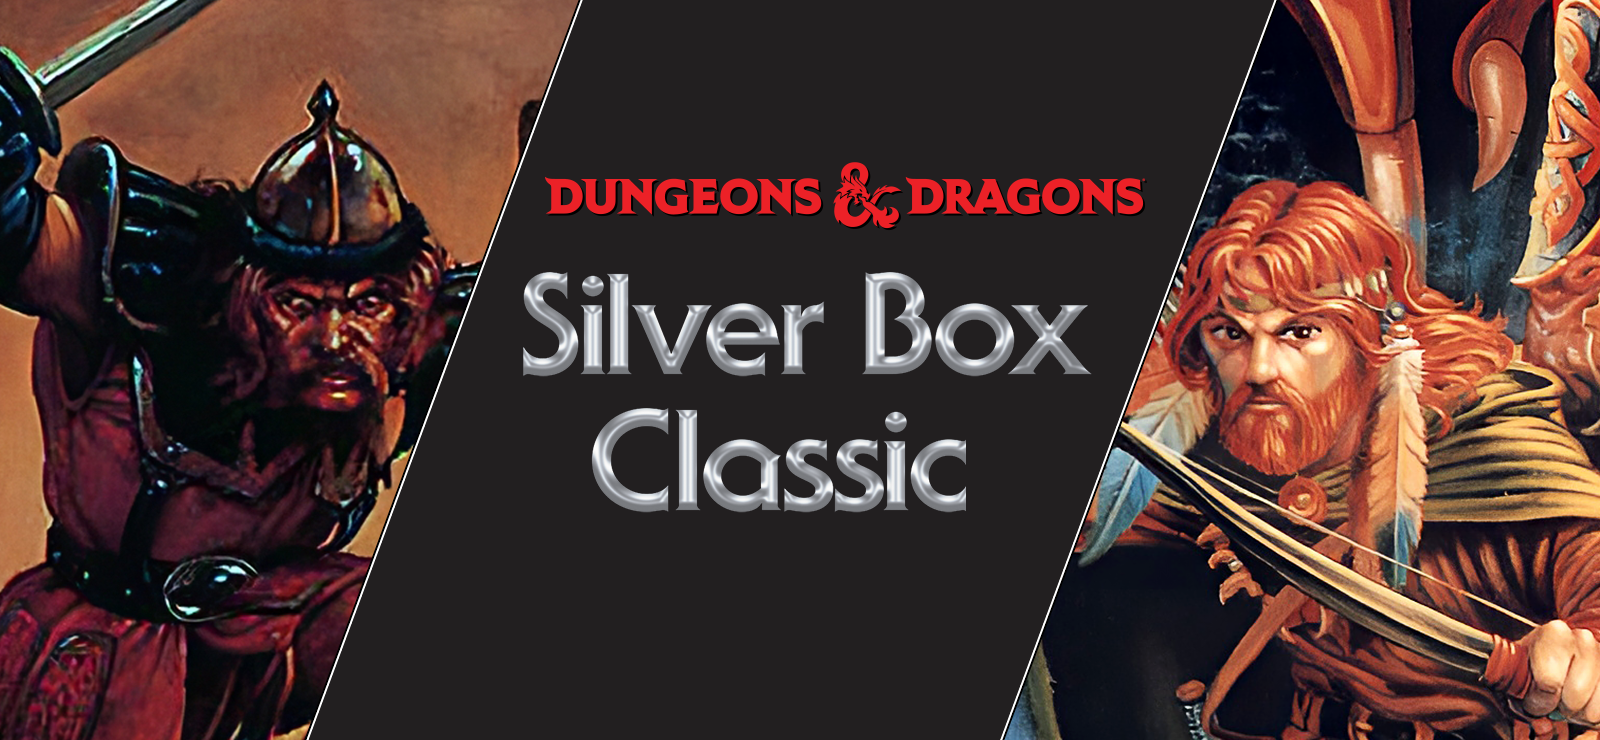 Silver Box Classics